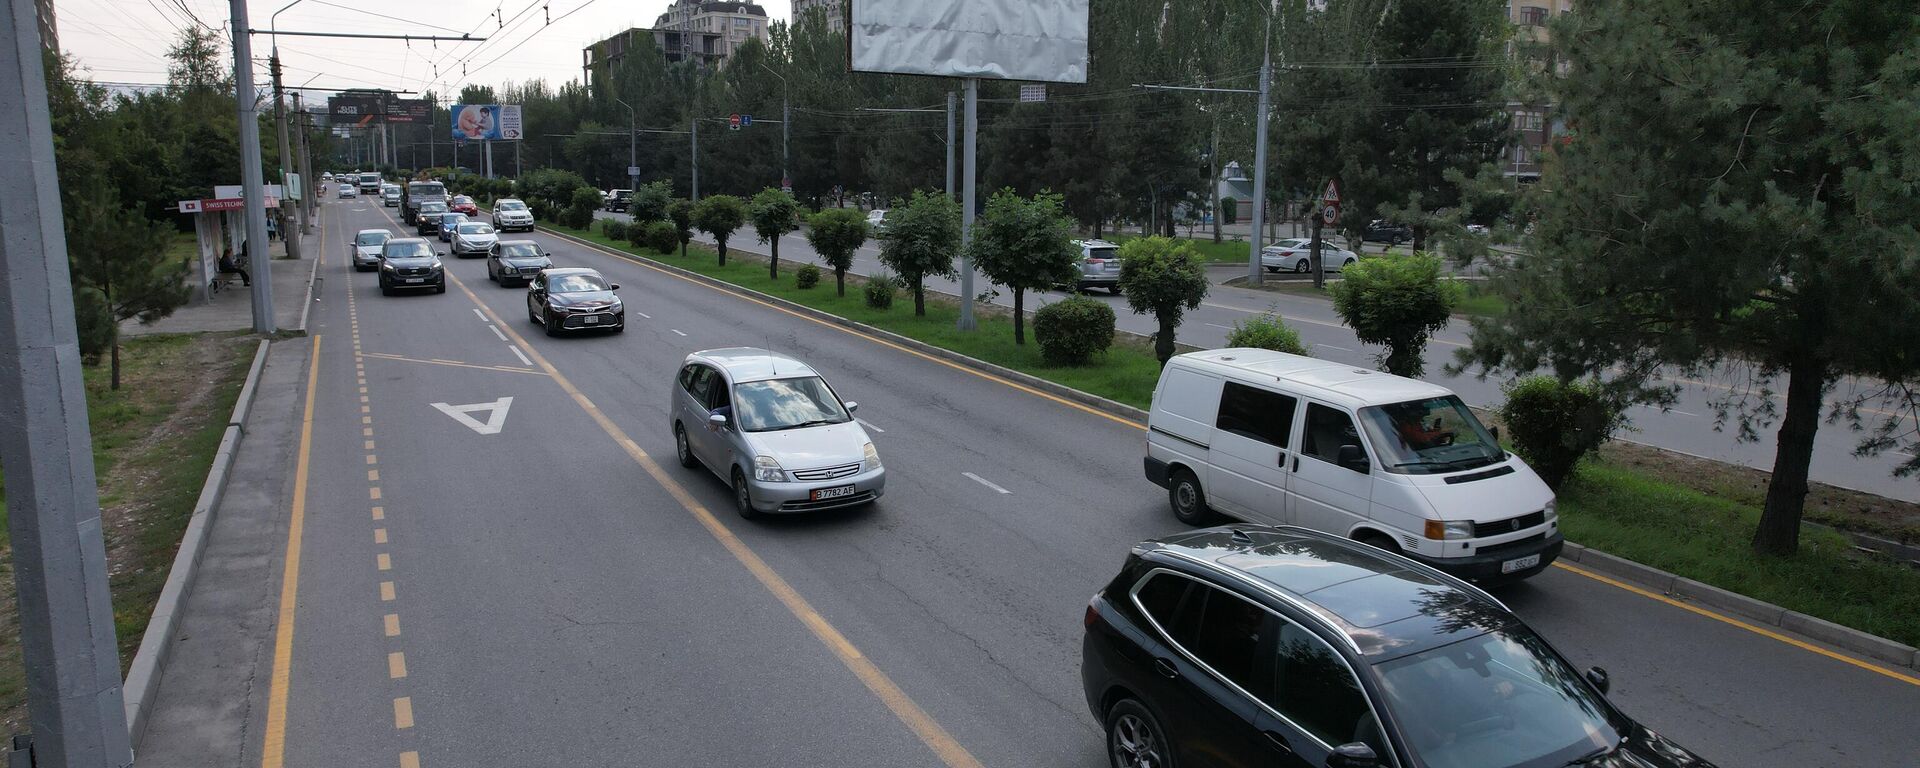 Автомобили на Южной магистрали в Бишкеке, после нанесения новой разметки для общественного транспорта. 05 сентября 2023 года. Архивное фото - Sputnik Кыргызстан, 1920, 11.09.2023